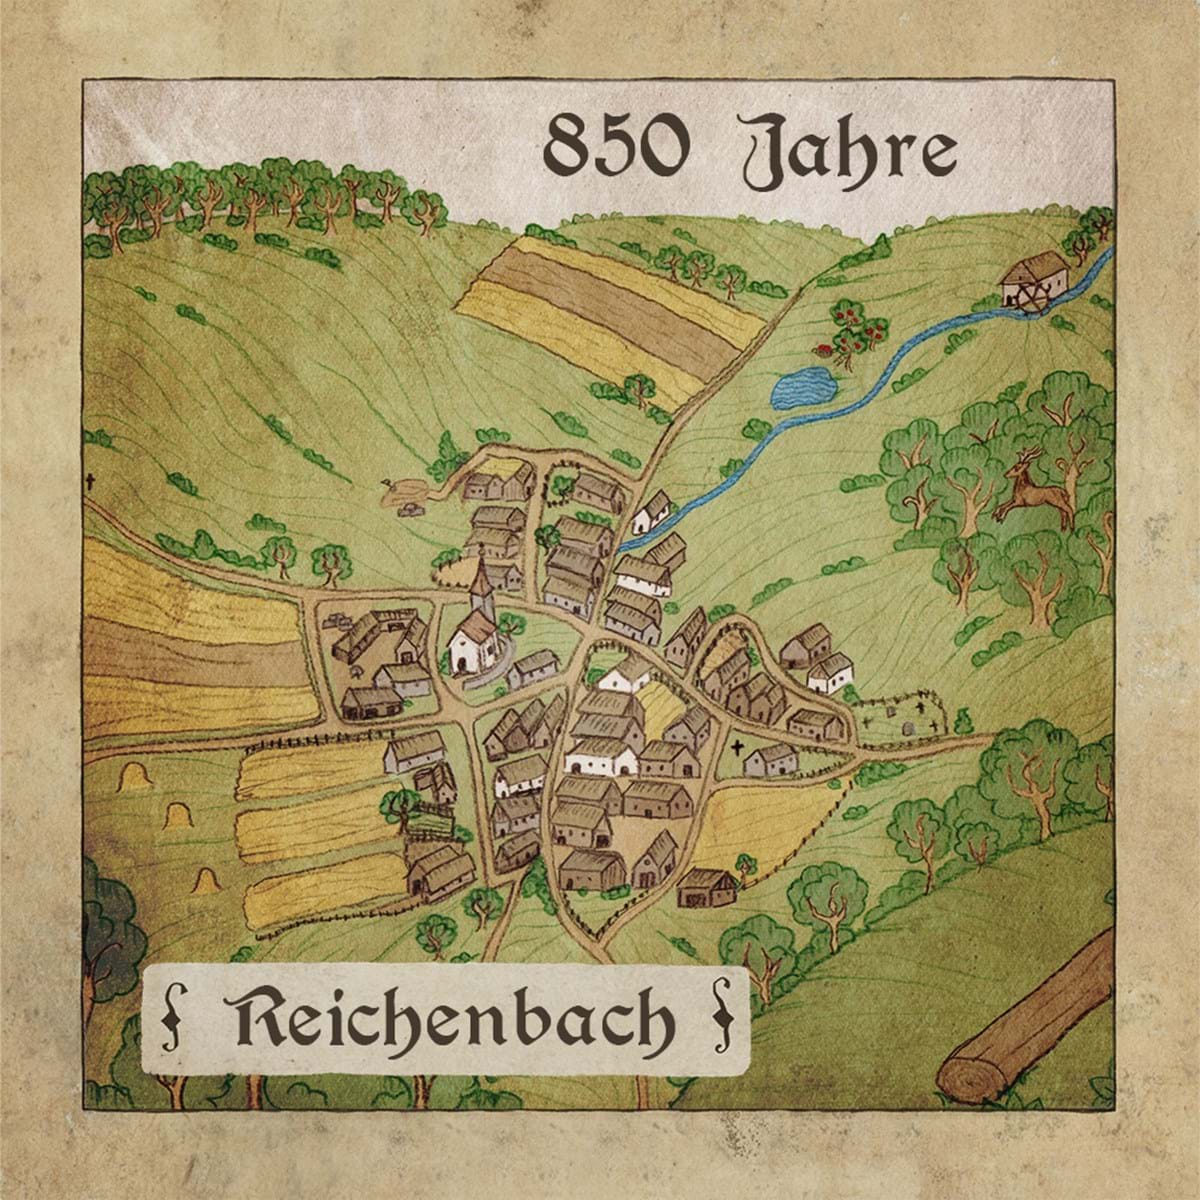   850 Jahre Reichenbach – Achteinhalb Geschichten